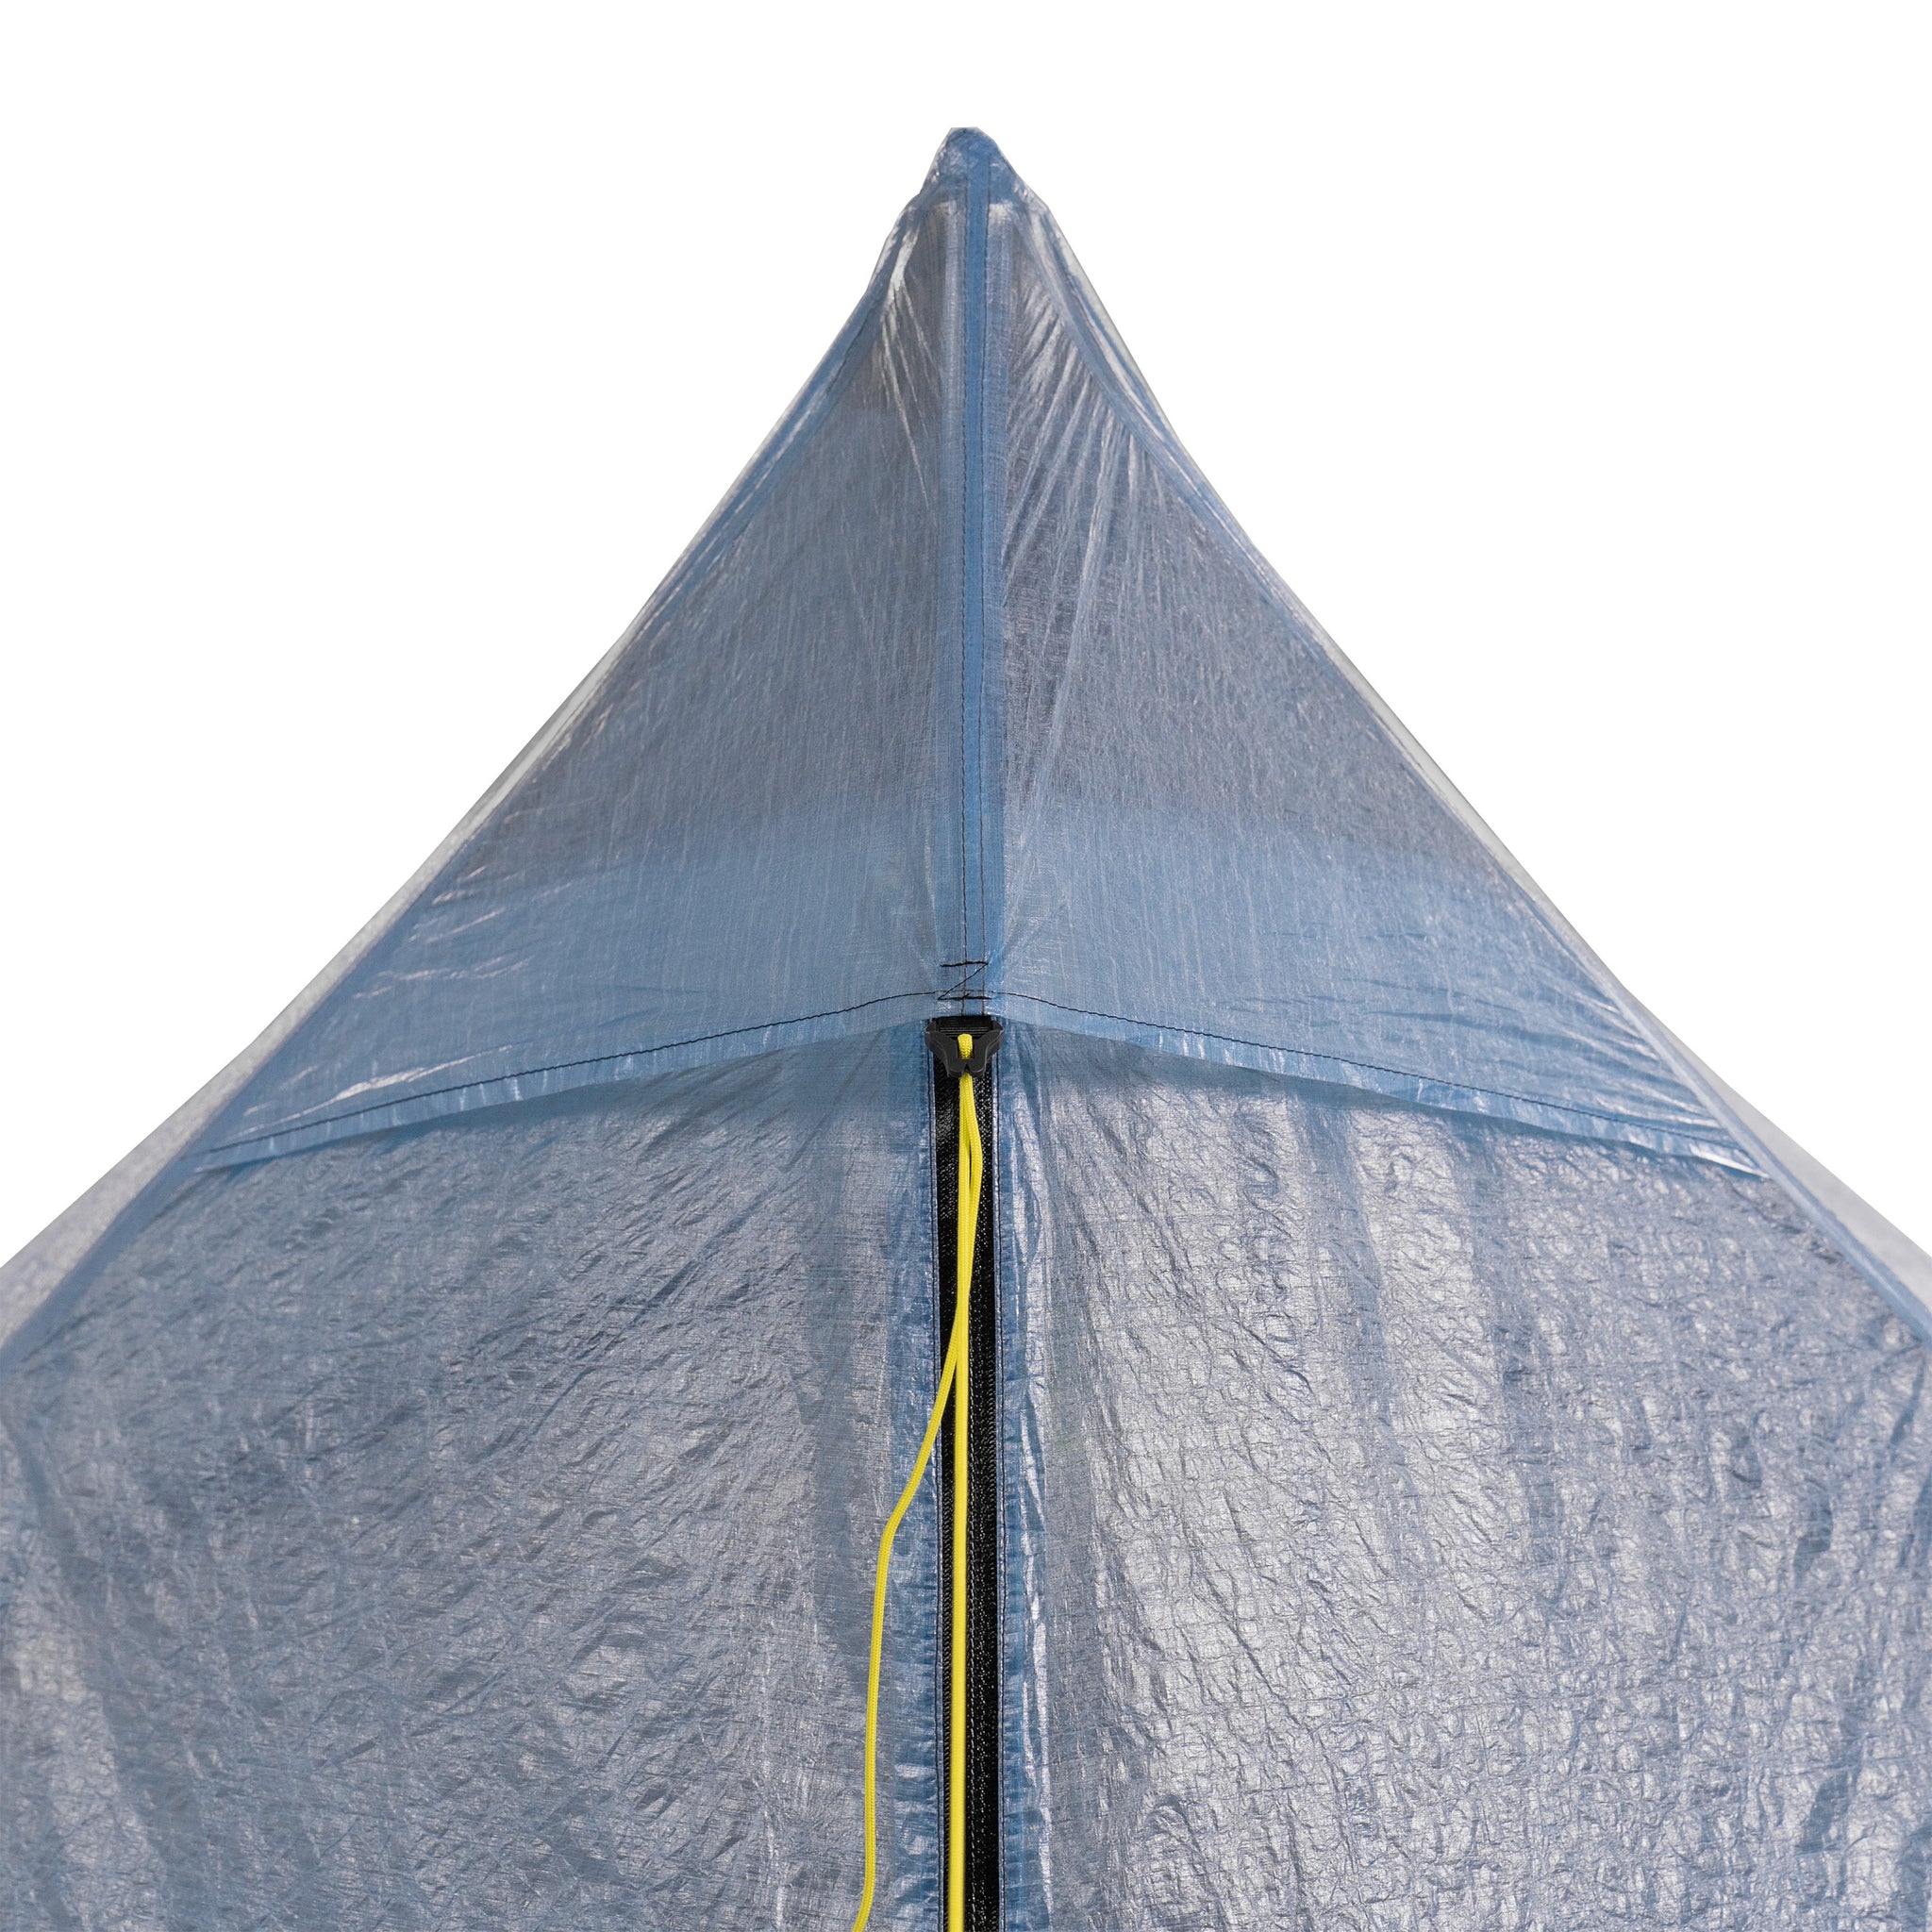 Duplex Zip Tent